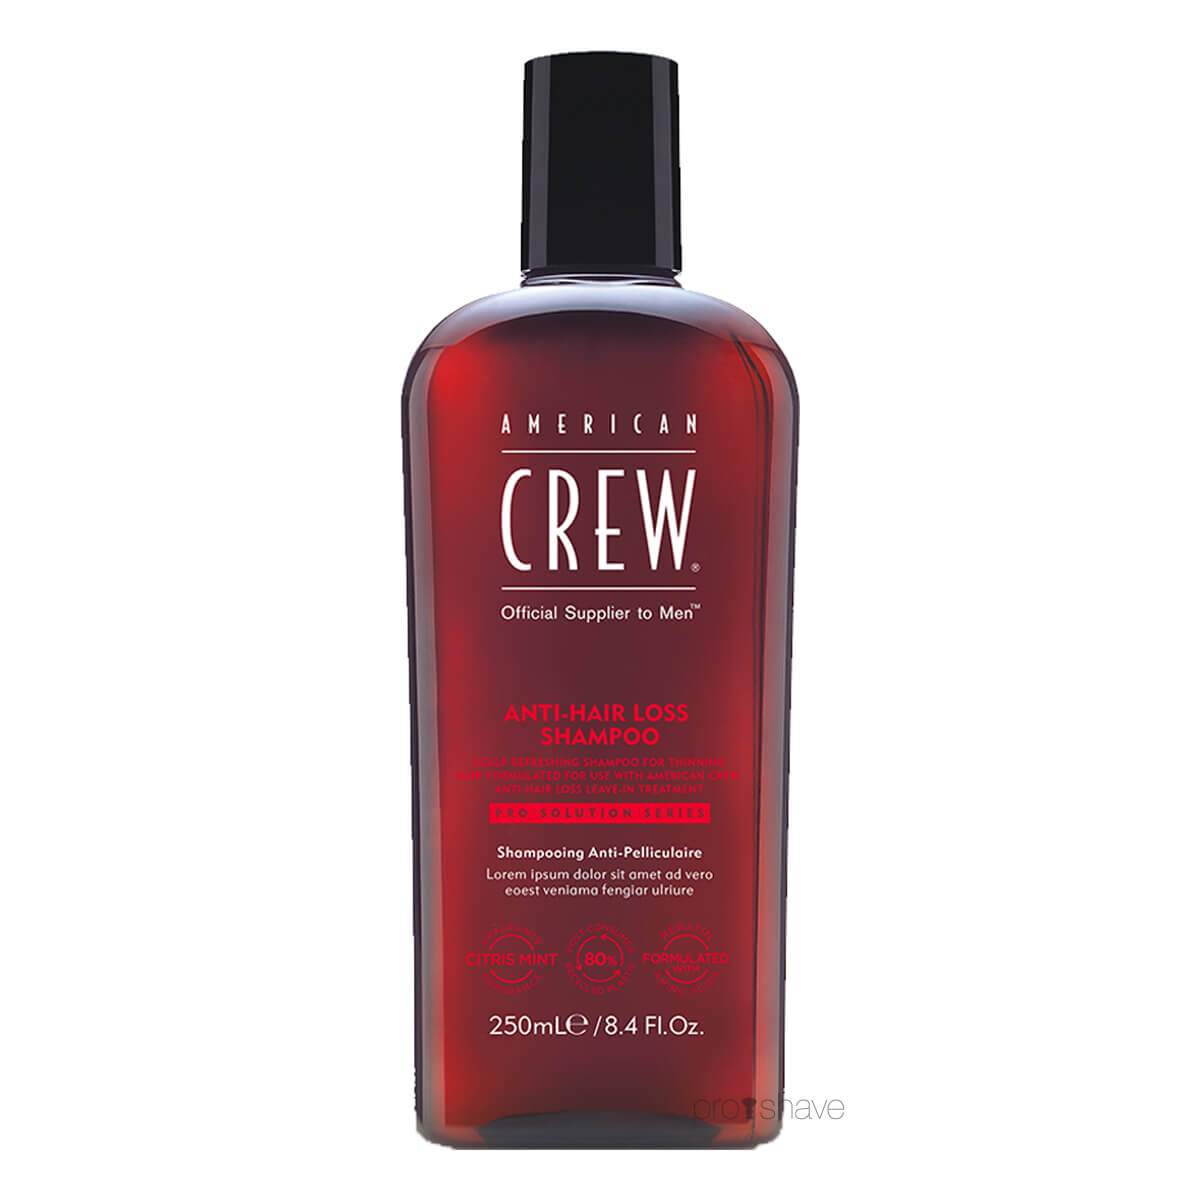 9: American Crew Anti-Hairloss Shampoo, 250 ml.